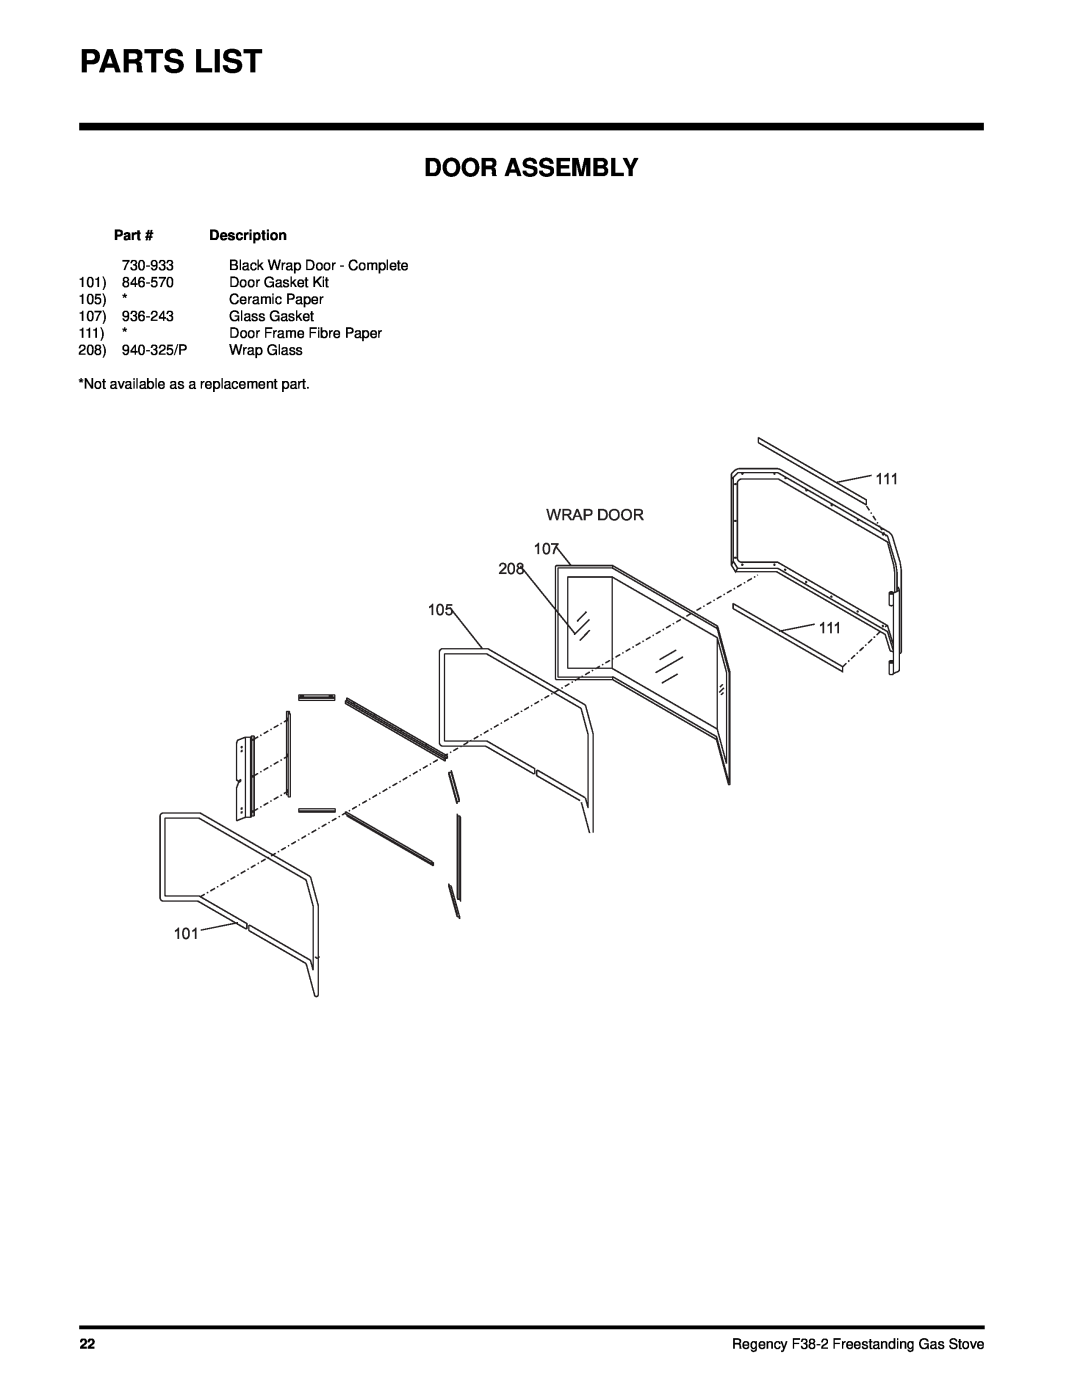 Regency F38-NG2, F38-LPG2 installation manual Door Assembly, Parts List, WRAP DOOR 107, 111 